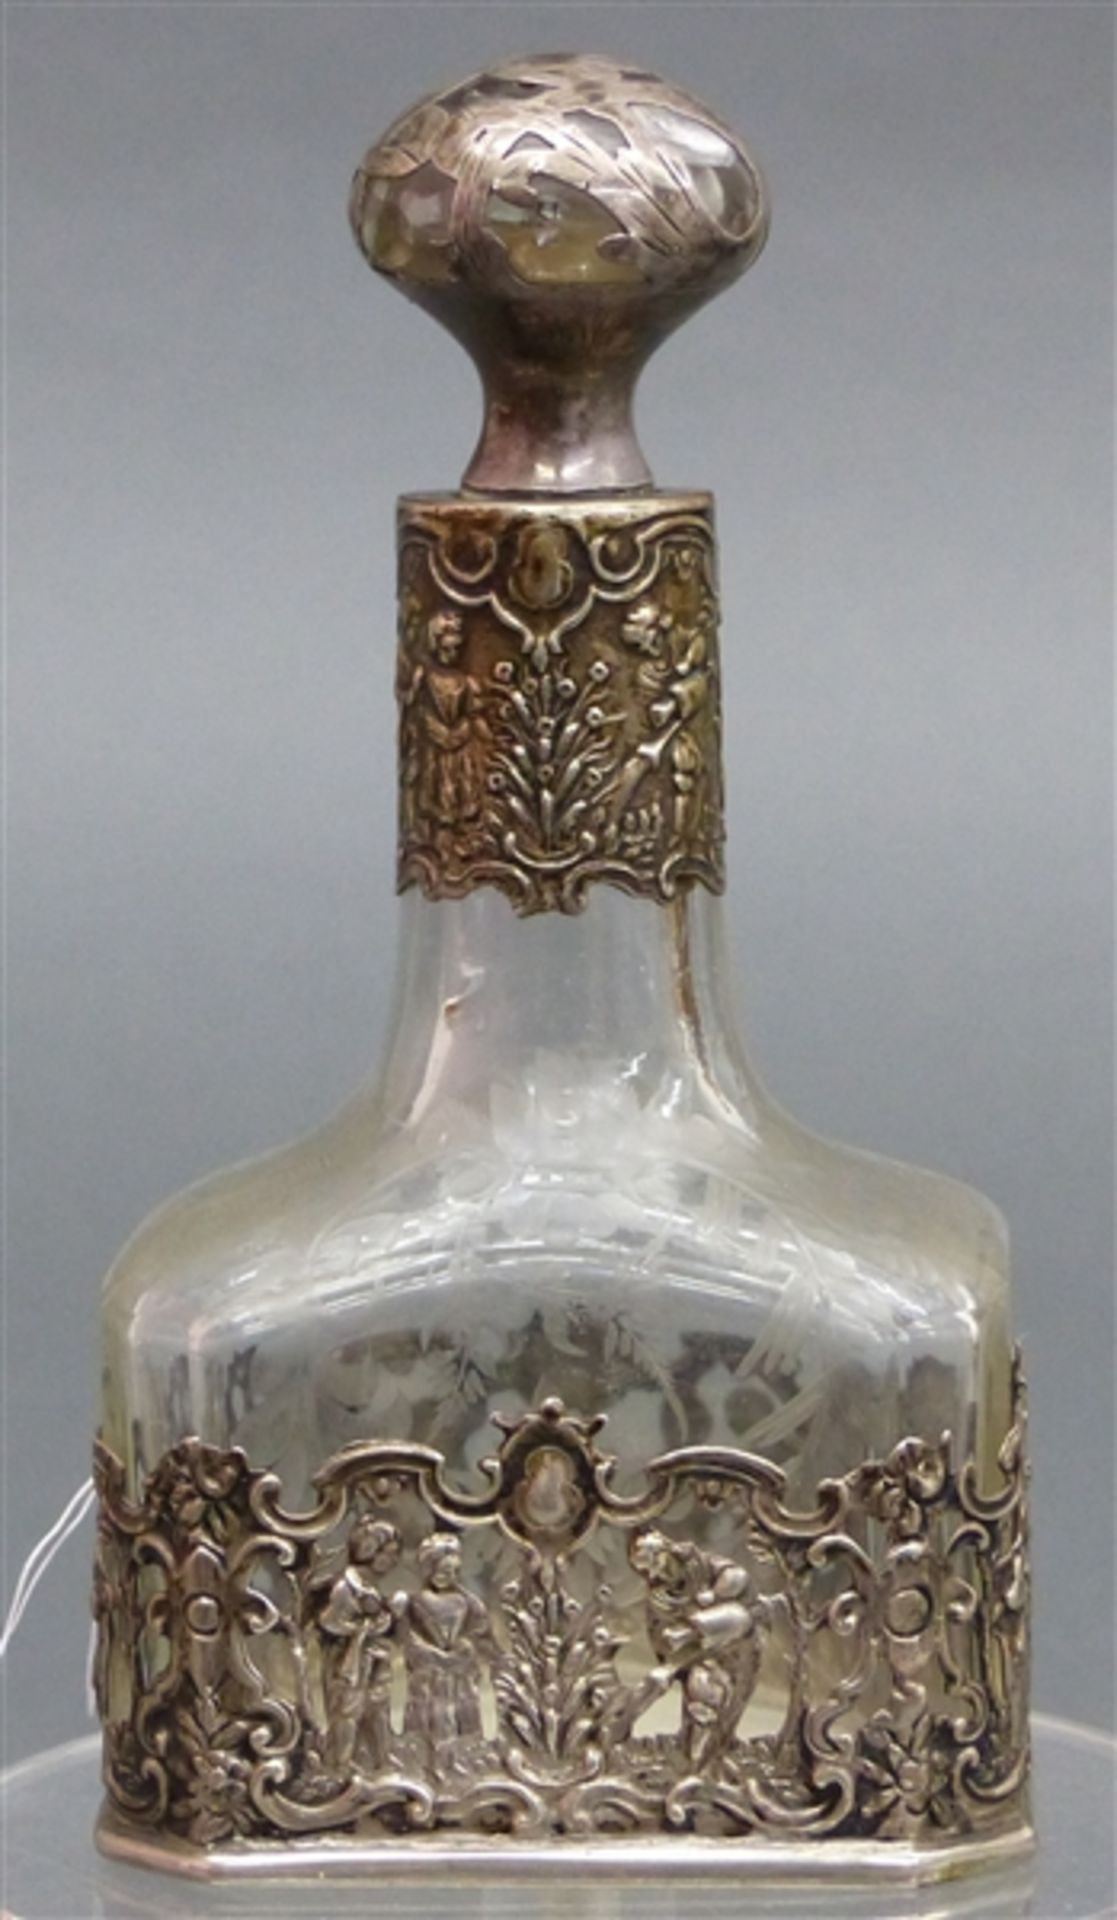 Parfümflacon farbloses Glas, beschliffen, reicher reliefierter Silberdekor, 19. Jh., h 14 cm,